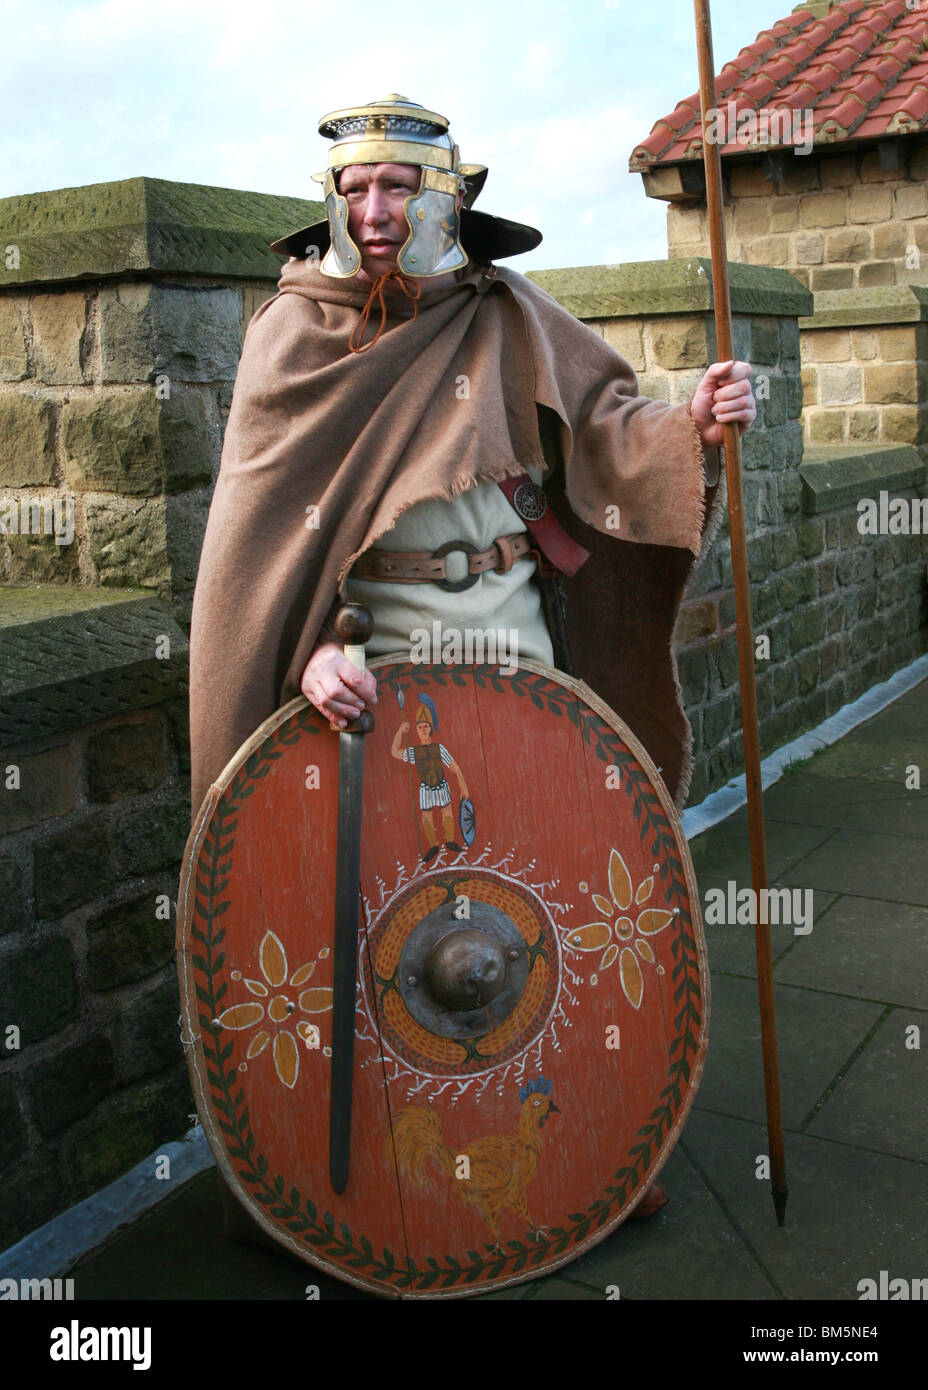 Römischer Soldat Kostüm in Position mit Schild und Speer Helm Farbe gekleidet Stockfoto